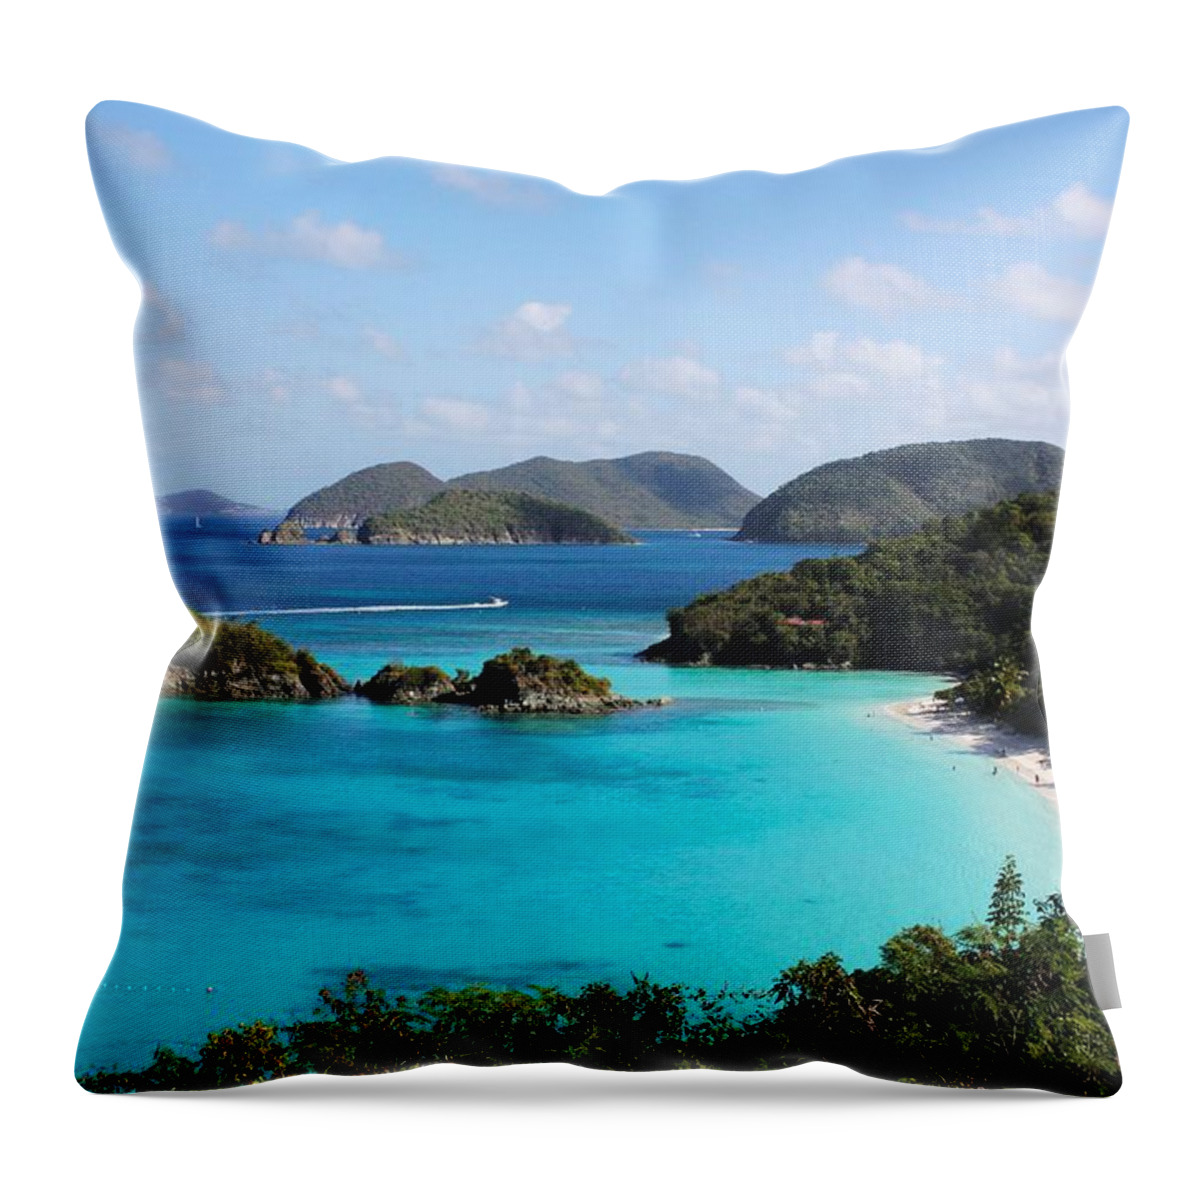 Caribbean Throw Pillow featuring the photograph Trunk Bay, St. John by Sarah Lilja